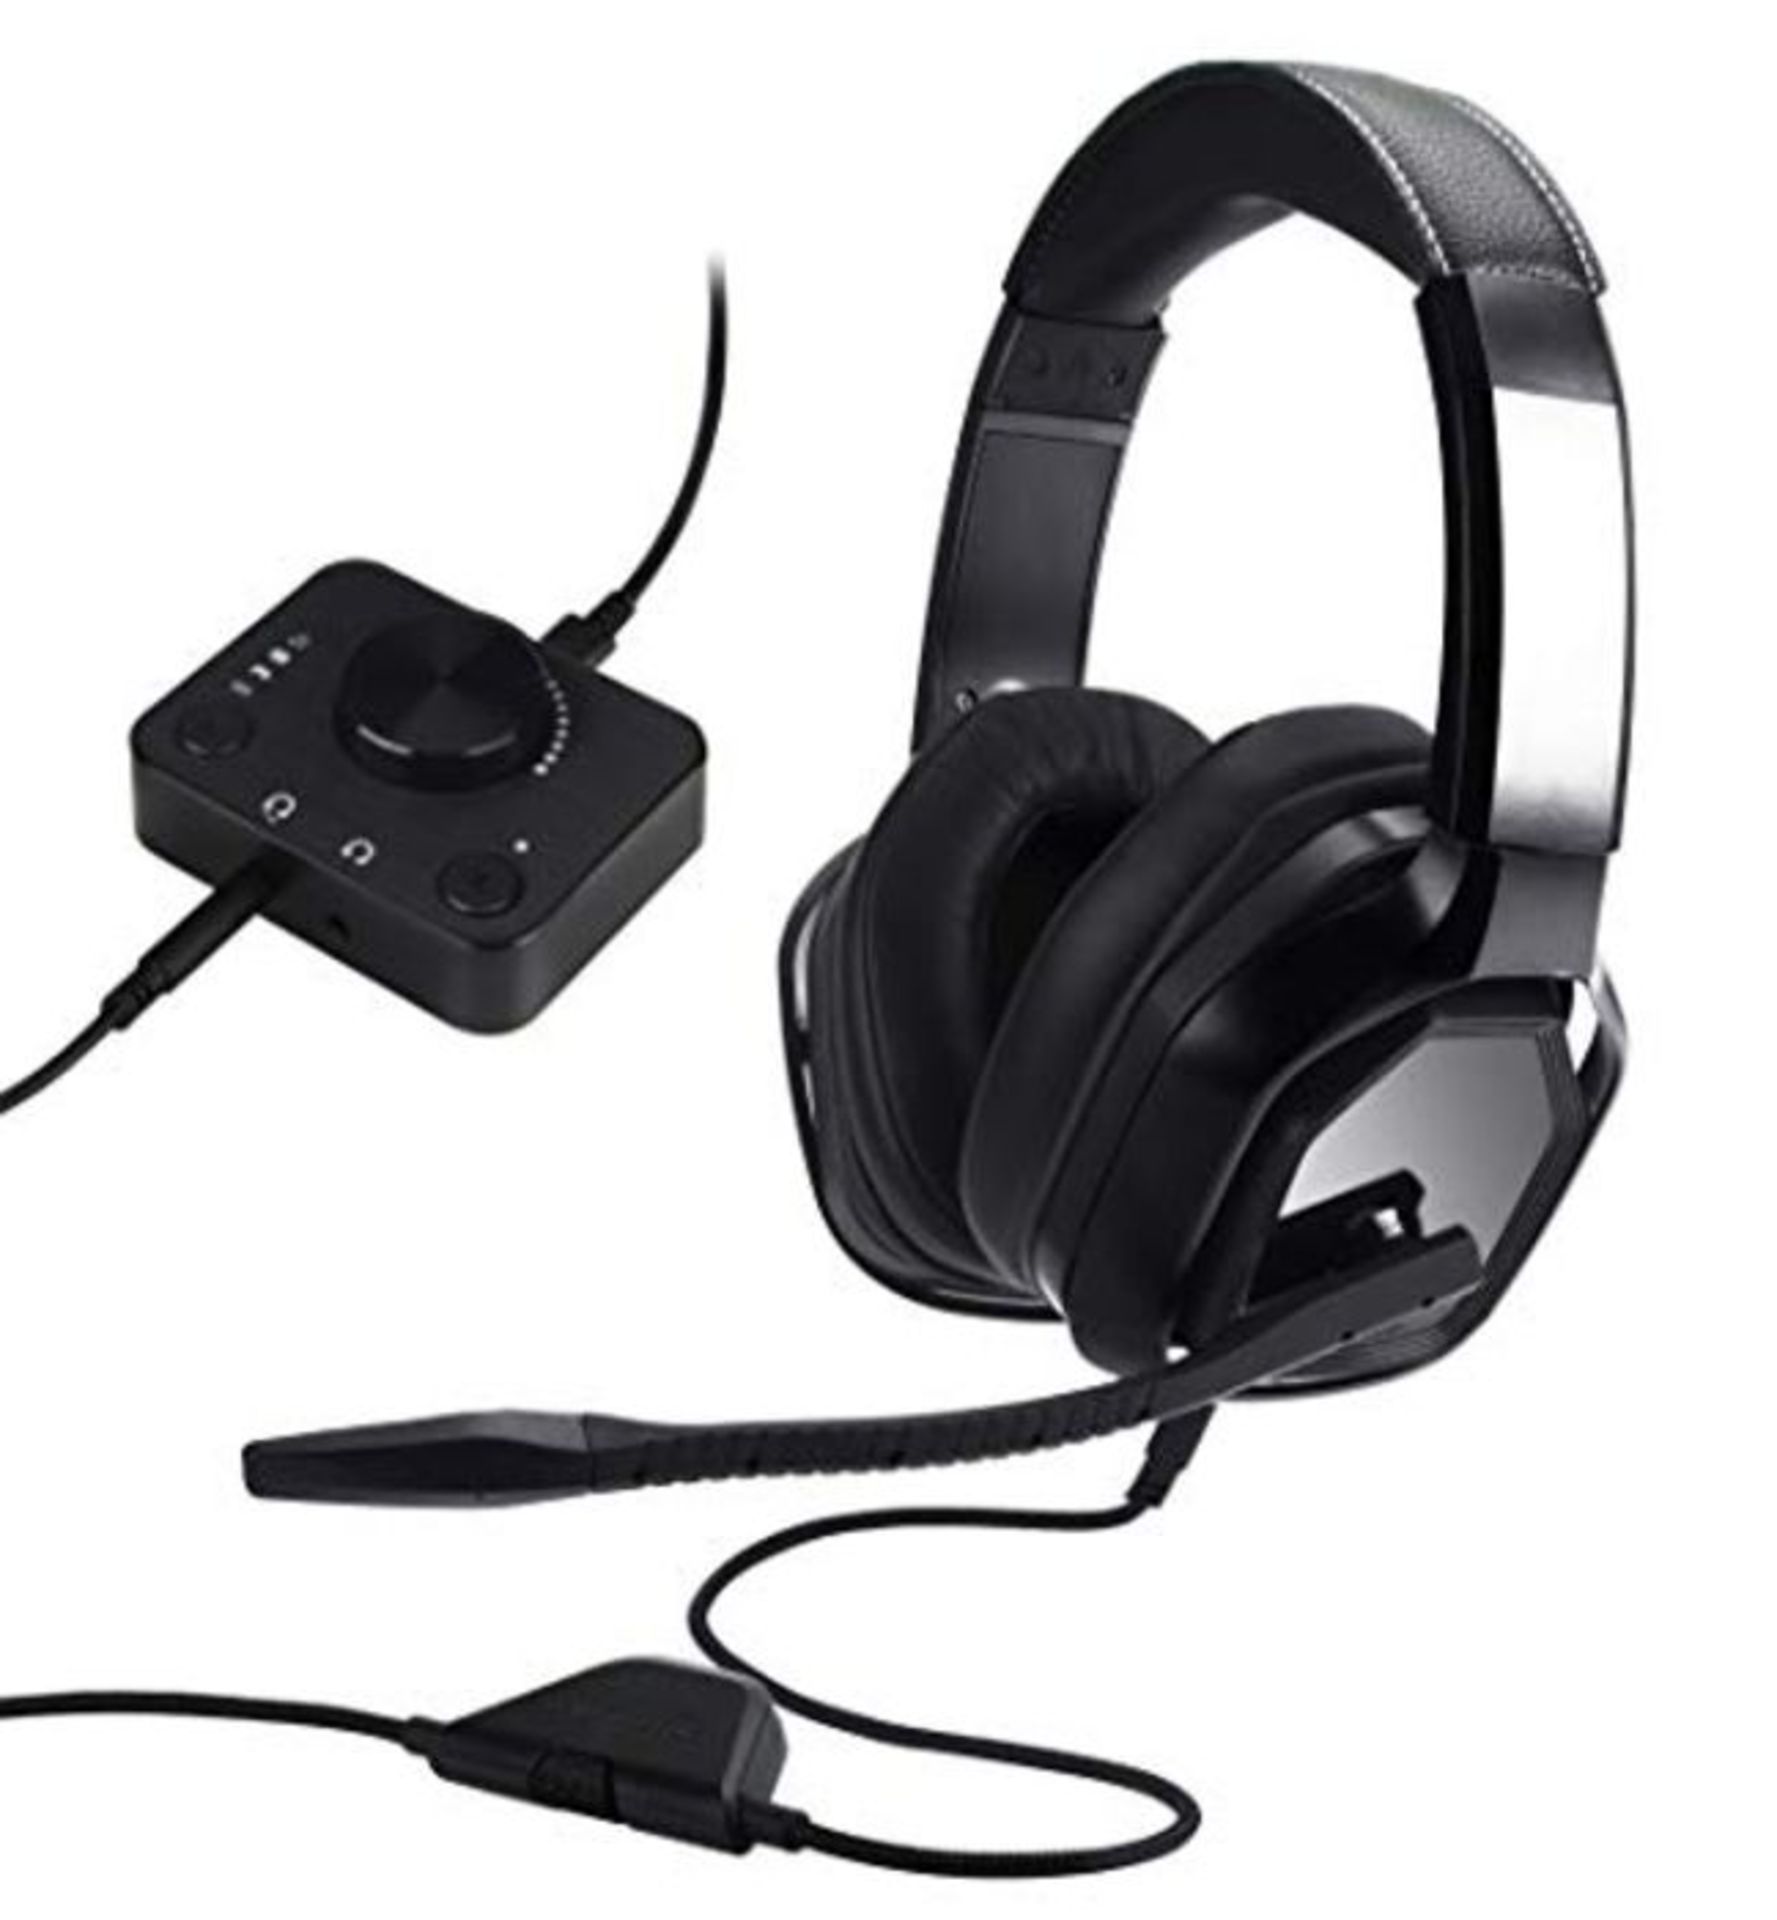 Amazon BasicsÂ â¬  Premium-Gaming-Headset fÃ¼r PCs und Konsolen (Xbox, PS4),